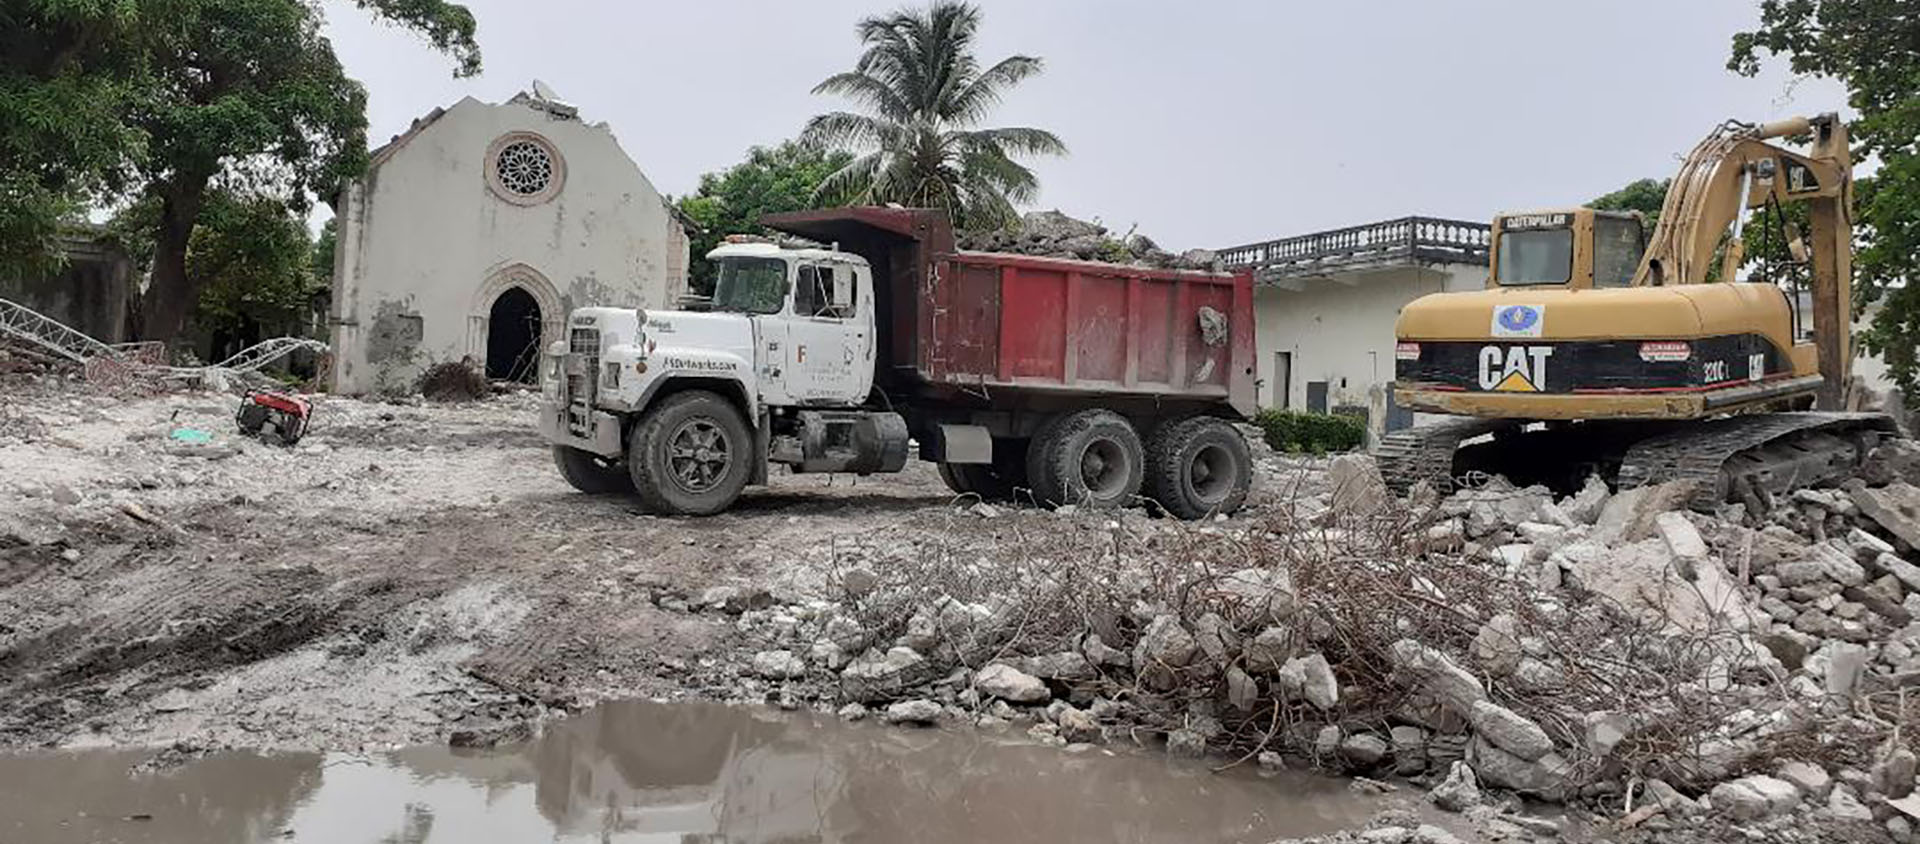 31 août 2021. Un camion emporte les restes de l'évêché des Cayes, totalement détruit par le séisme du 14 août | © Max-Savi Carmel